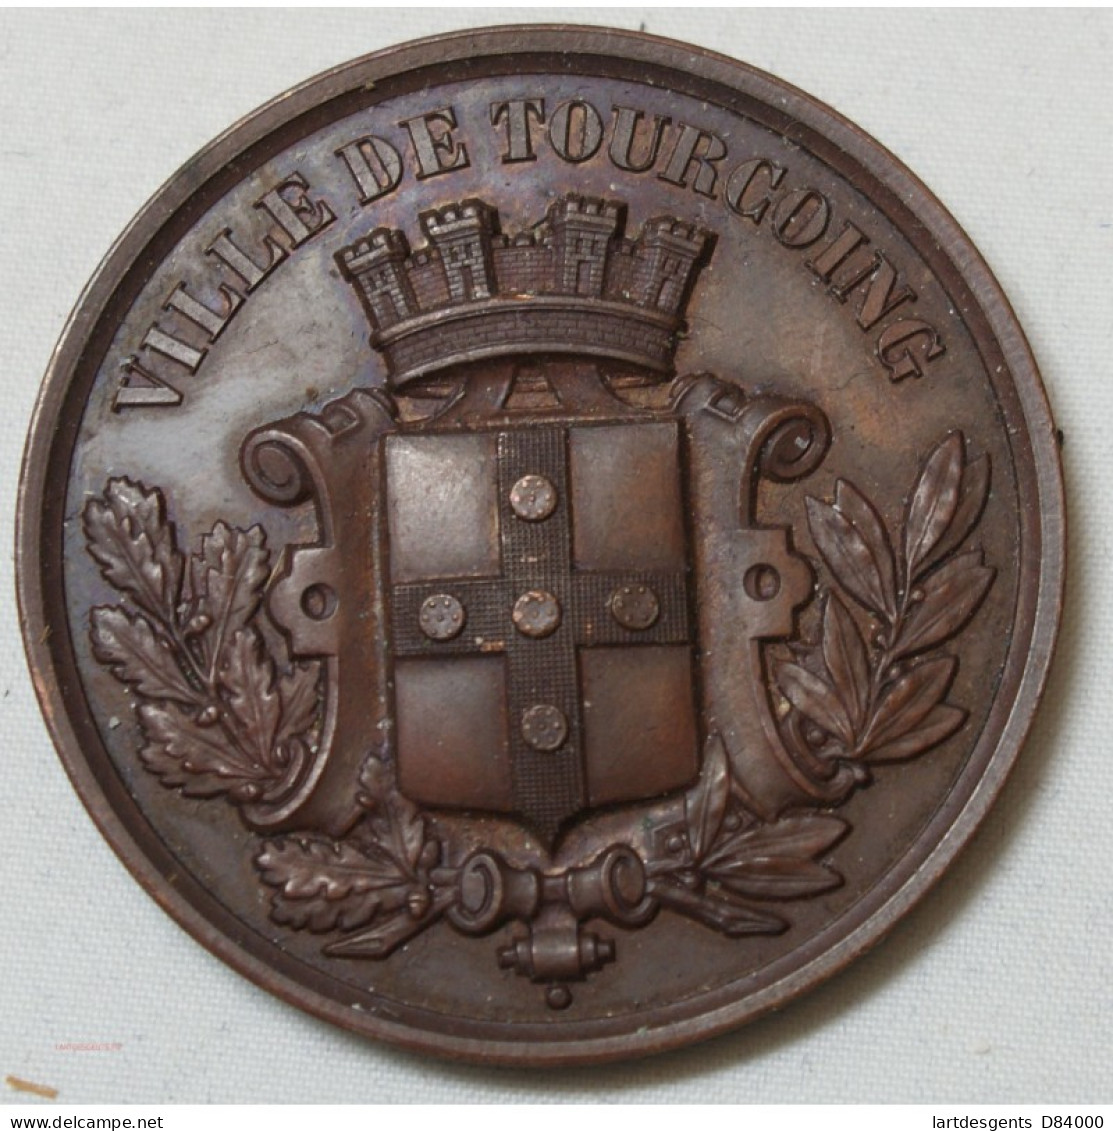 Médaille Ville De Tourcoing, Pose De La 1ère Pierre Lycée Spécial 1883 - Professionals / Firms